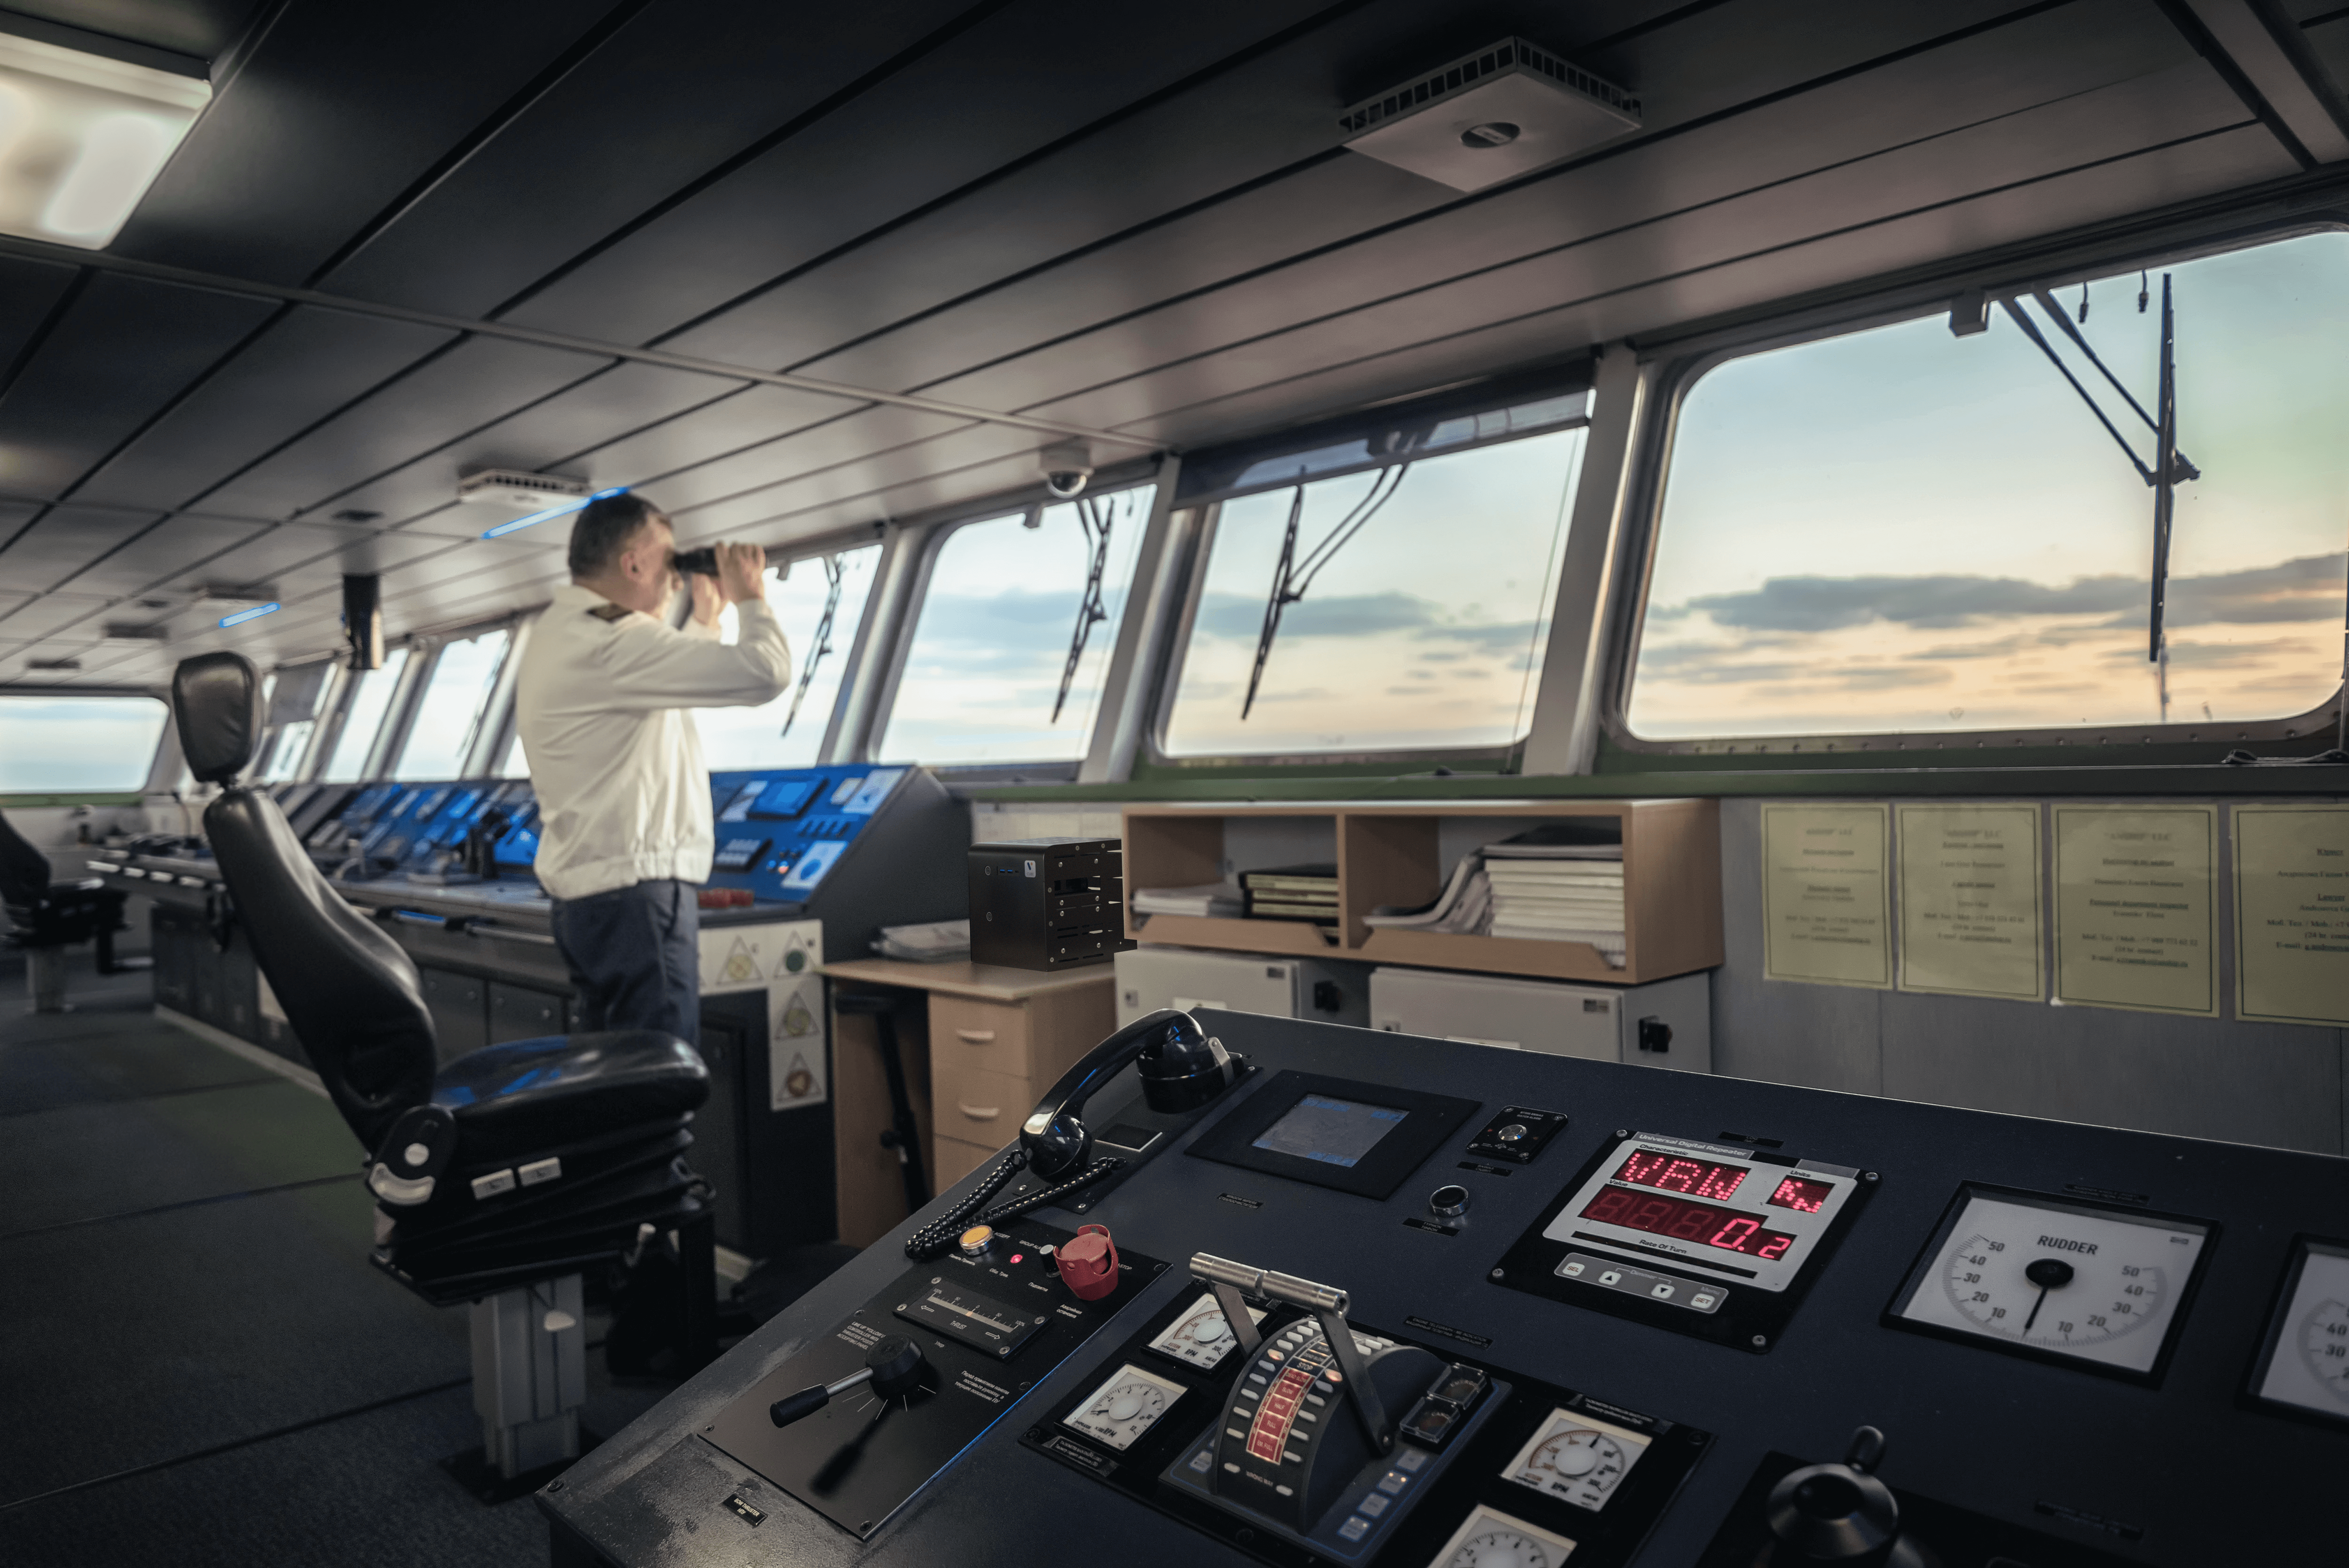 Intelligenter, sauberer, besser vernetzt: die digitale Zukunft der Schifffahrt